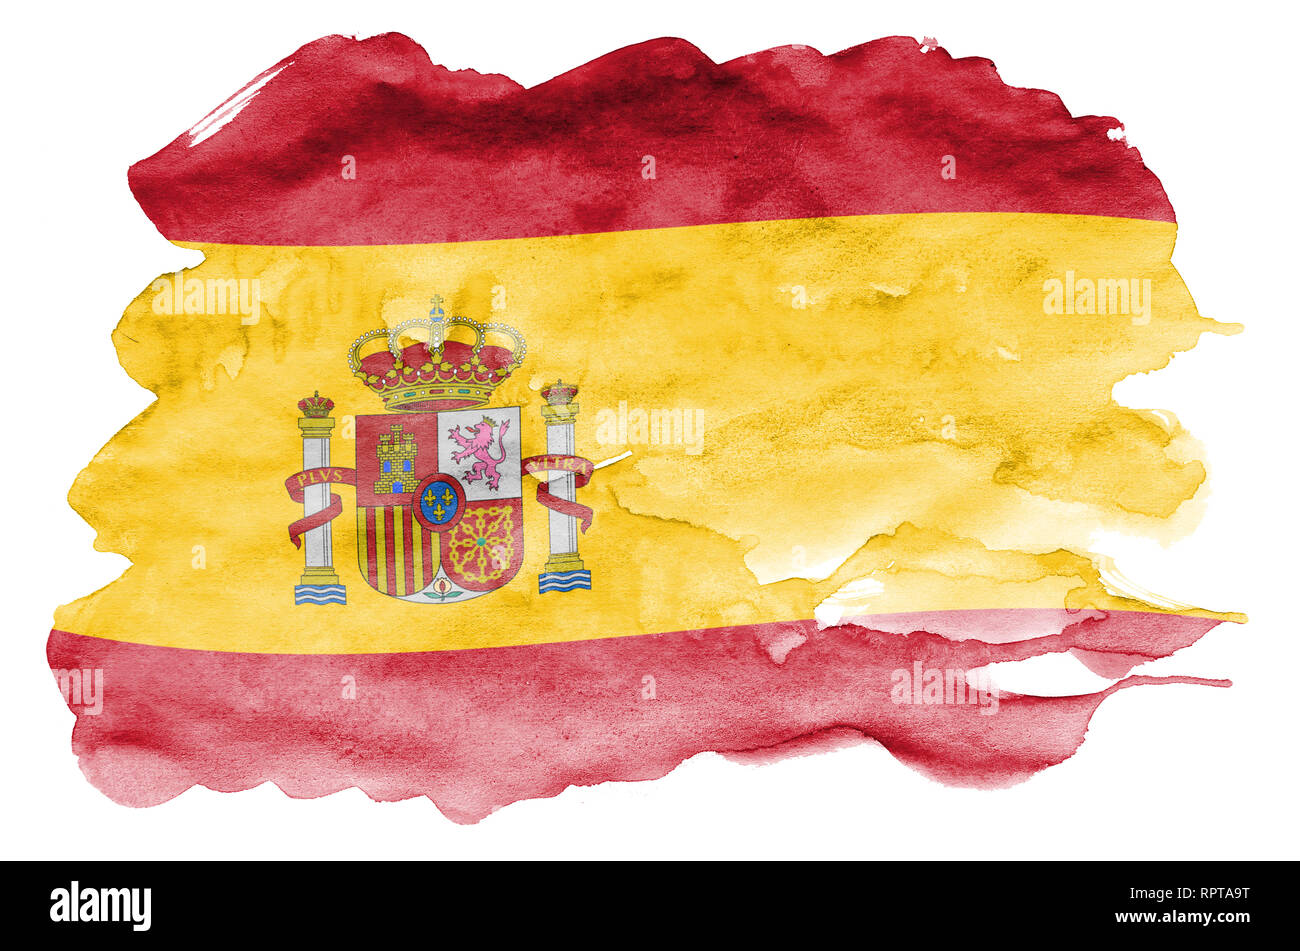 La bandera de España está representada en estilo Acuarela líquida aislado  sobre fondo blanco. Descuidado sombreado de pintura con la imagen de la  bandera nacional. Día de la Independencia Fotografía de stock -